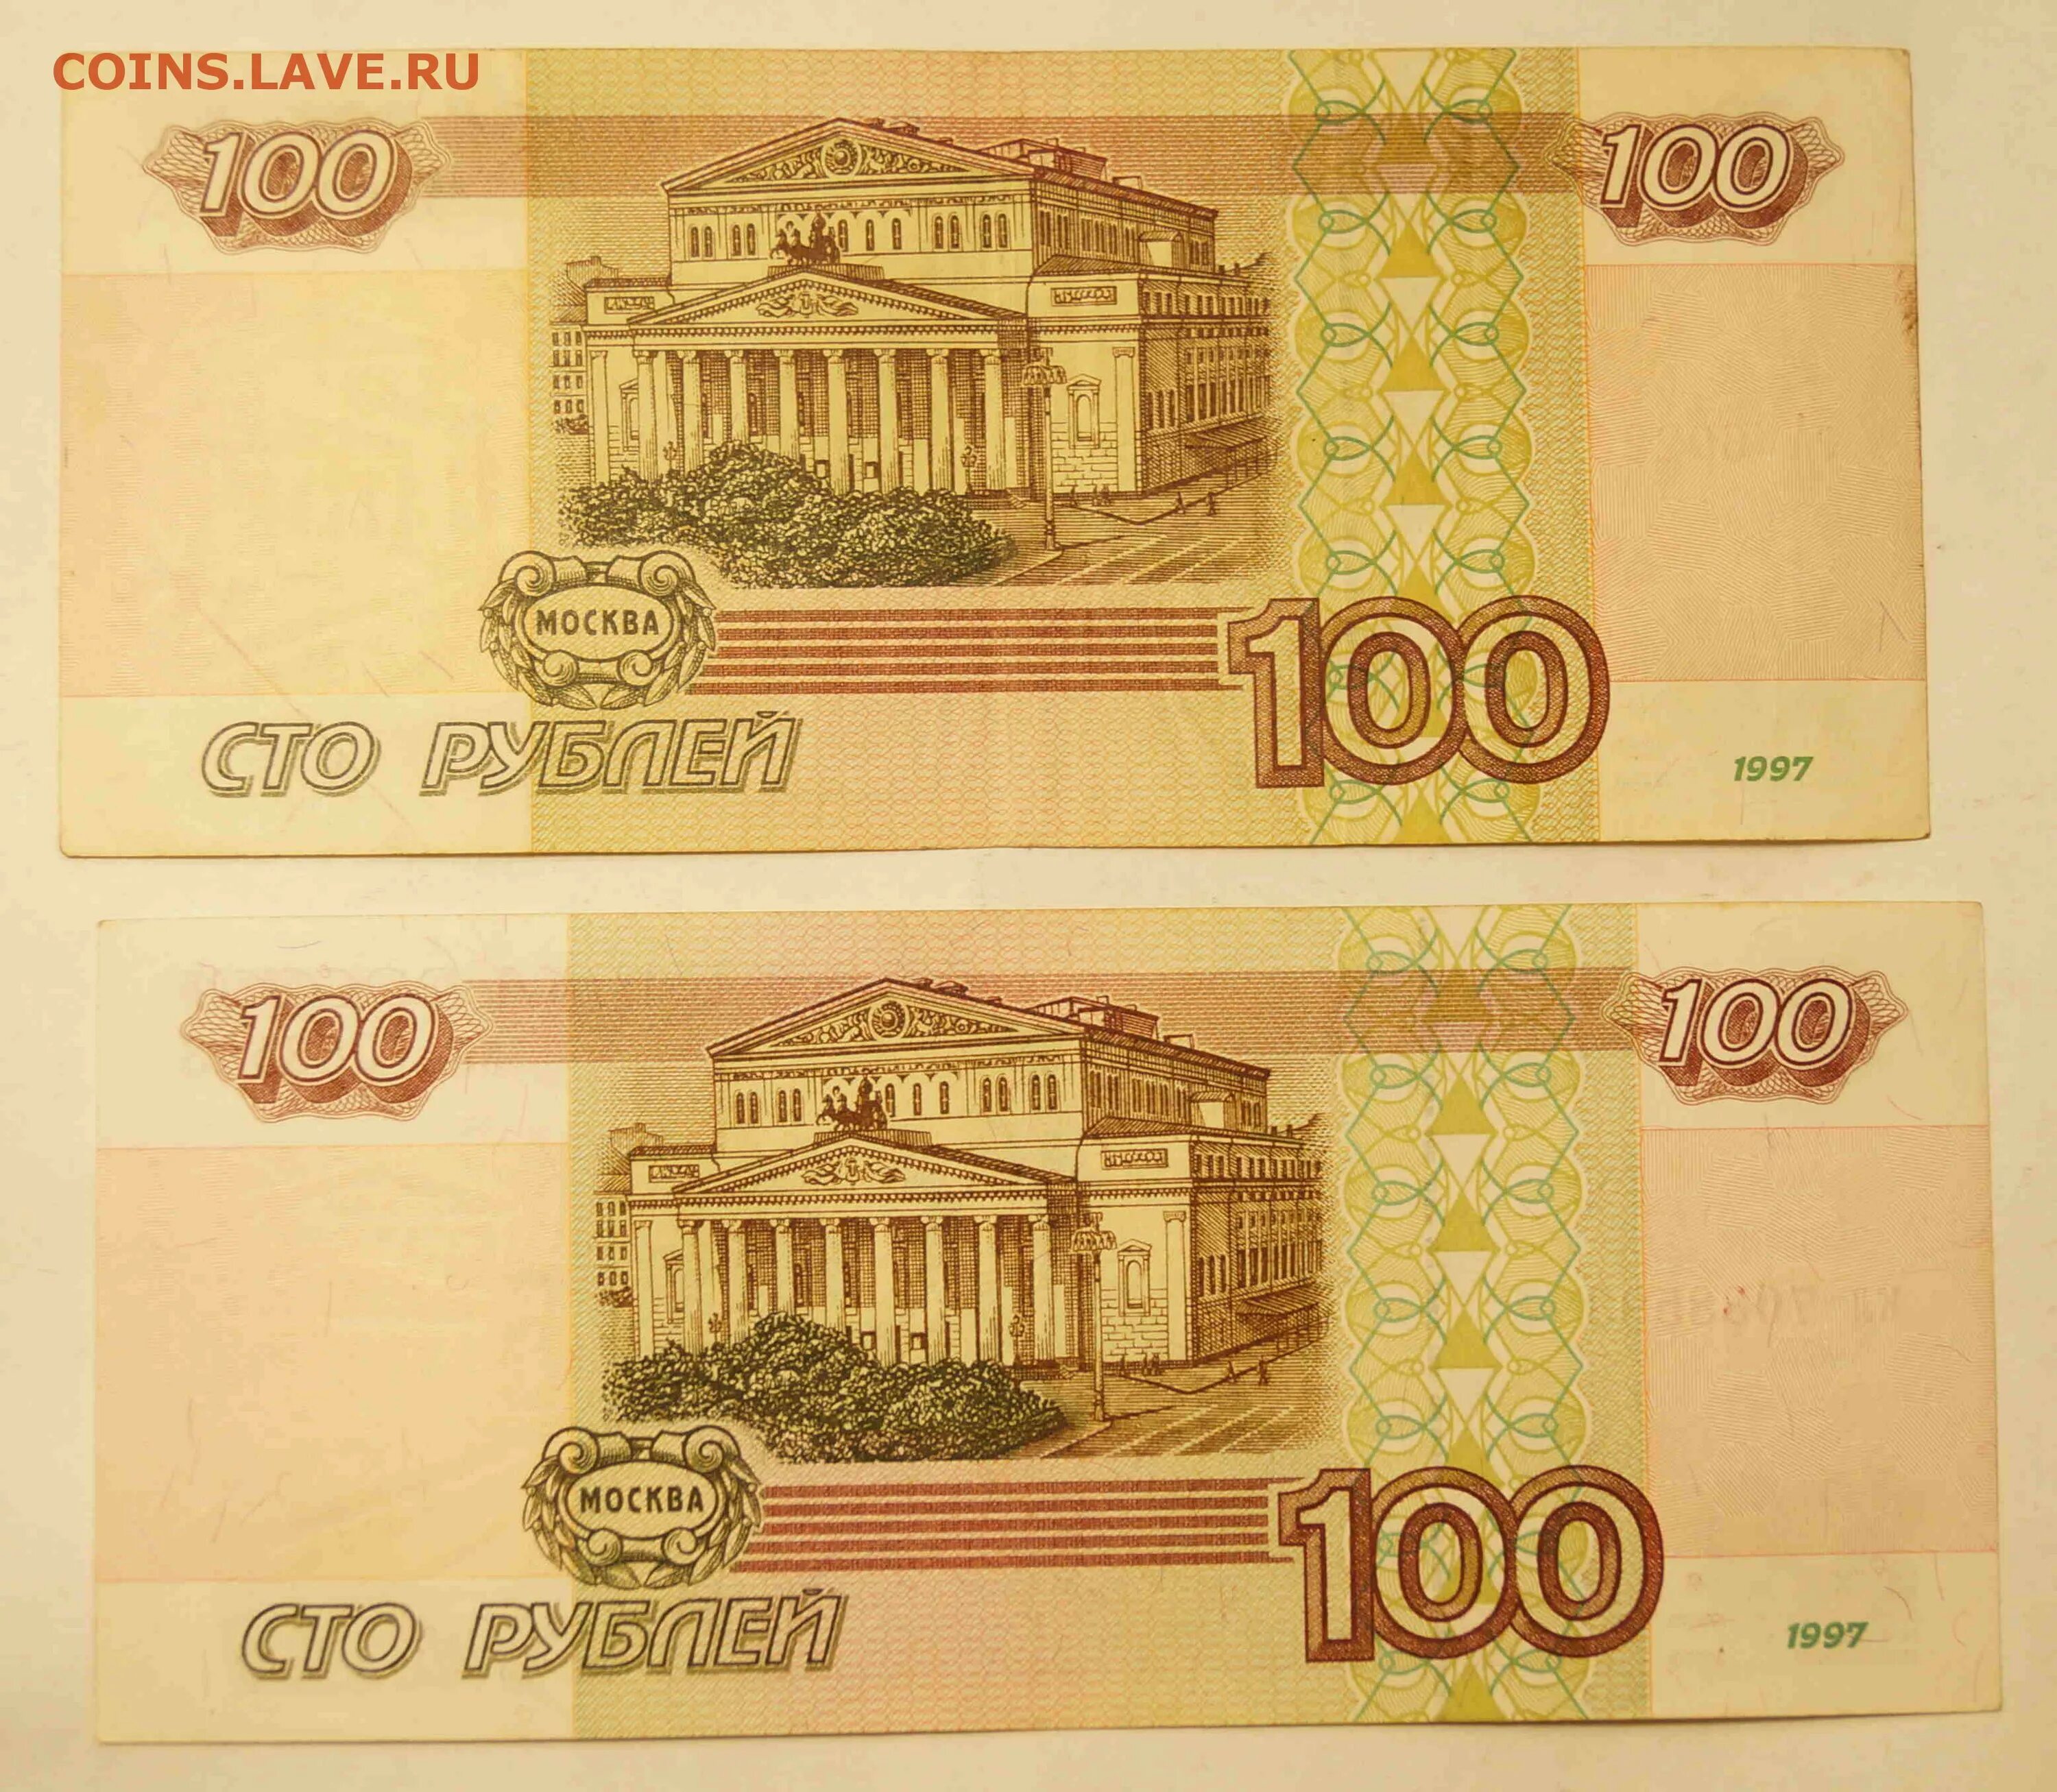 100.000 тысяч. Купюра 100 тысяч рублей 1995. СТО тысяч рублей купюра. 100 000 Рублей 1995 года. Купюра 100.000 руб.